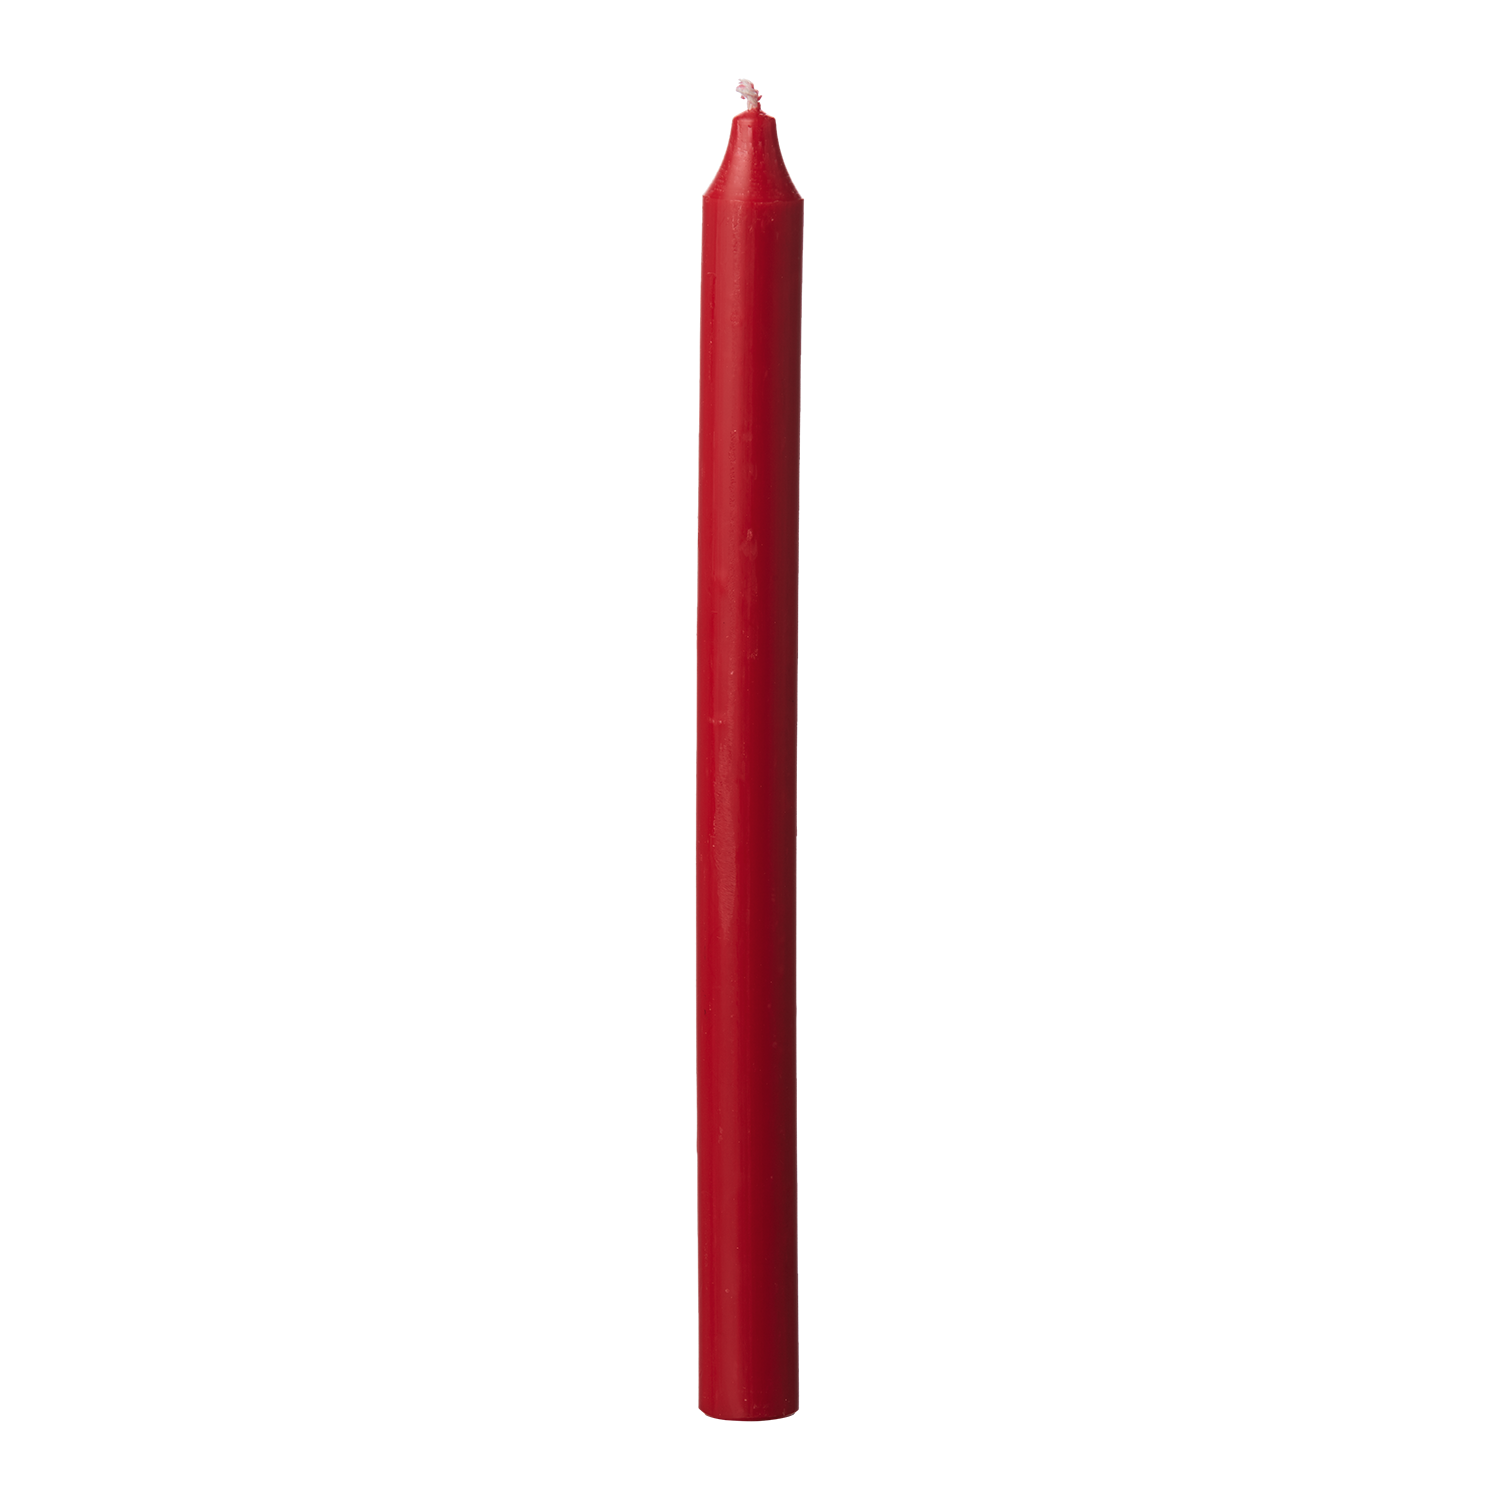 Set de 6 bougies pour chandelier rouge longues torsadées - 2x2x20cm